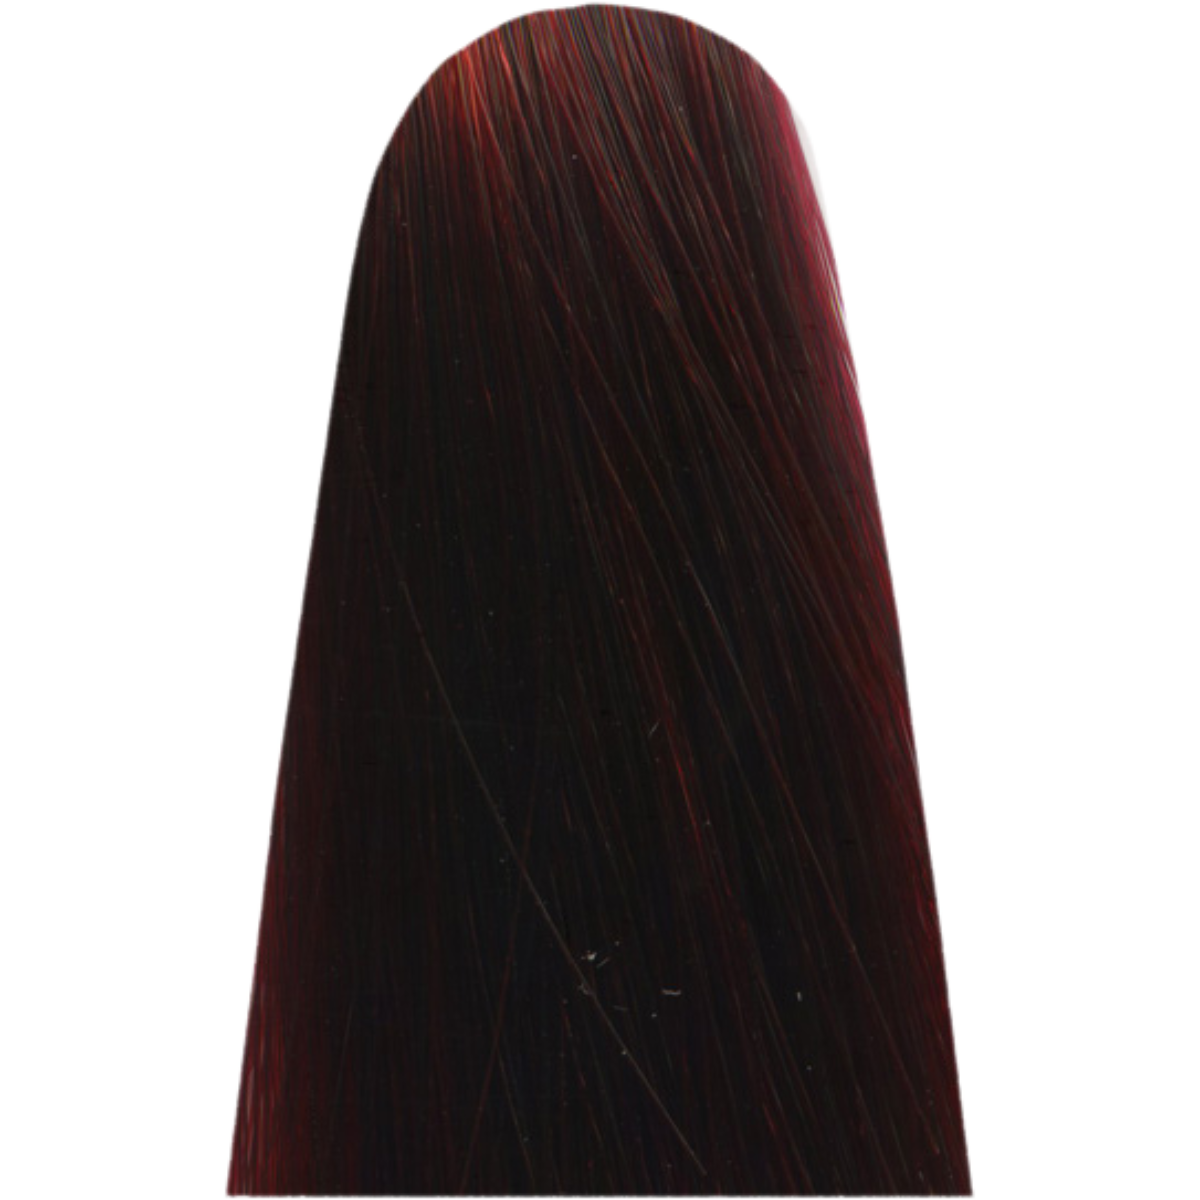 צבע שיער c5,60 אדום LIGHT INTENSE RED BROWN מג`ירל MAJIREL לוריאל צבע לשיער 50 גרם